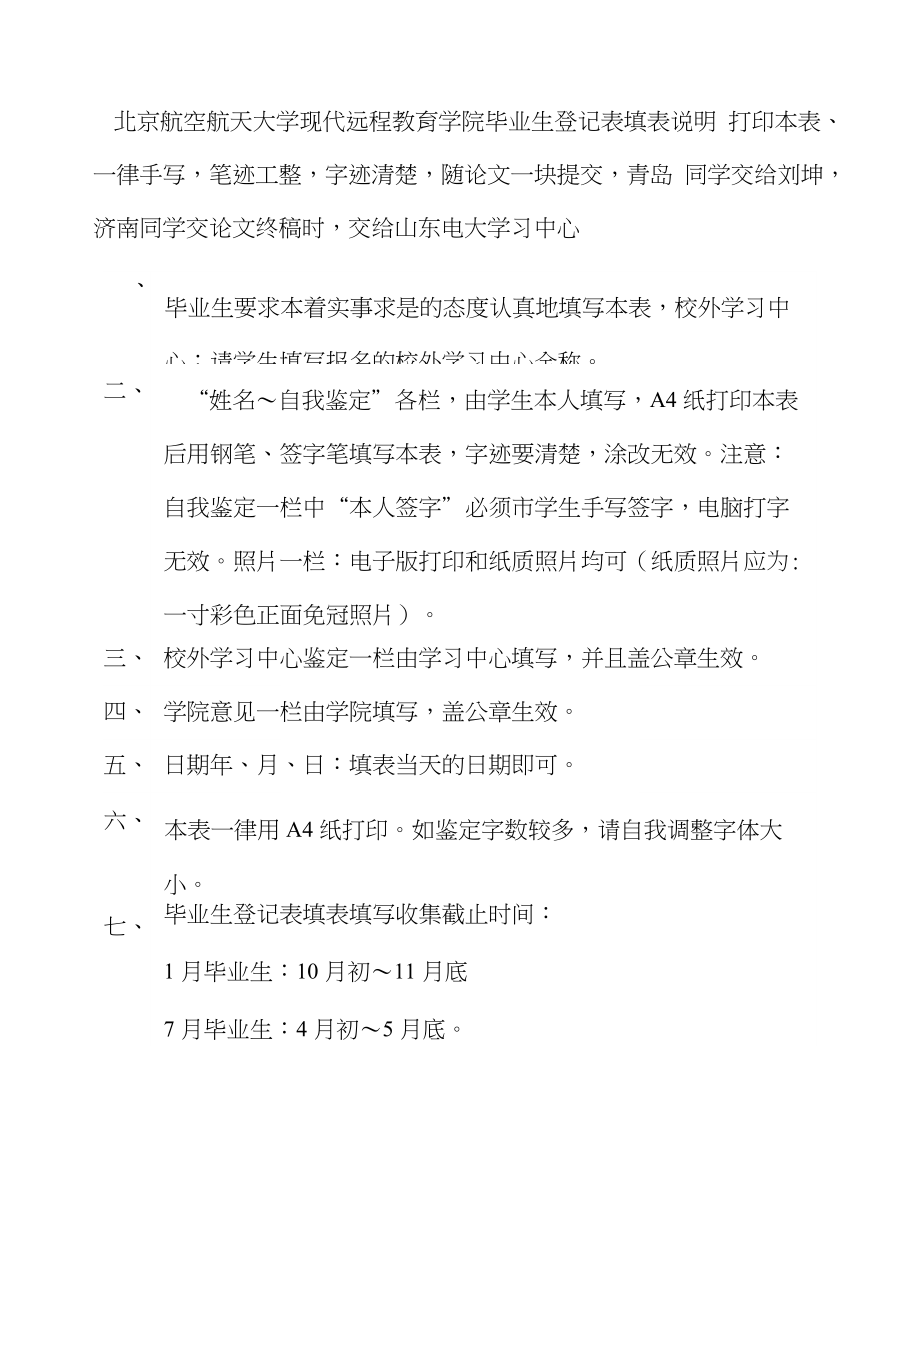 北京航空航天大学现代远程教育学院毕业生登记表(修订后)_第1页